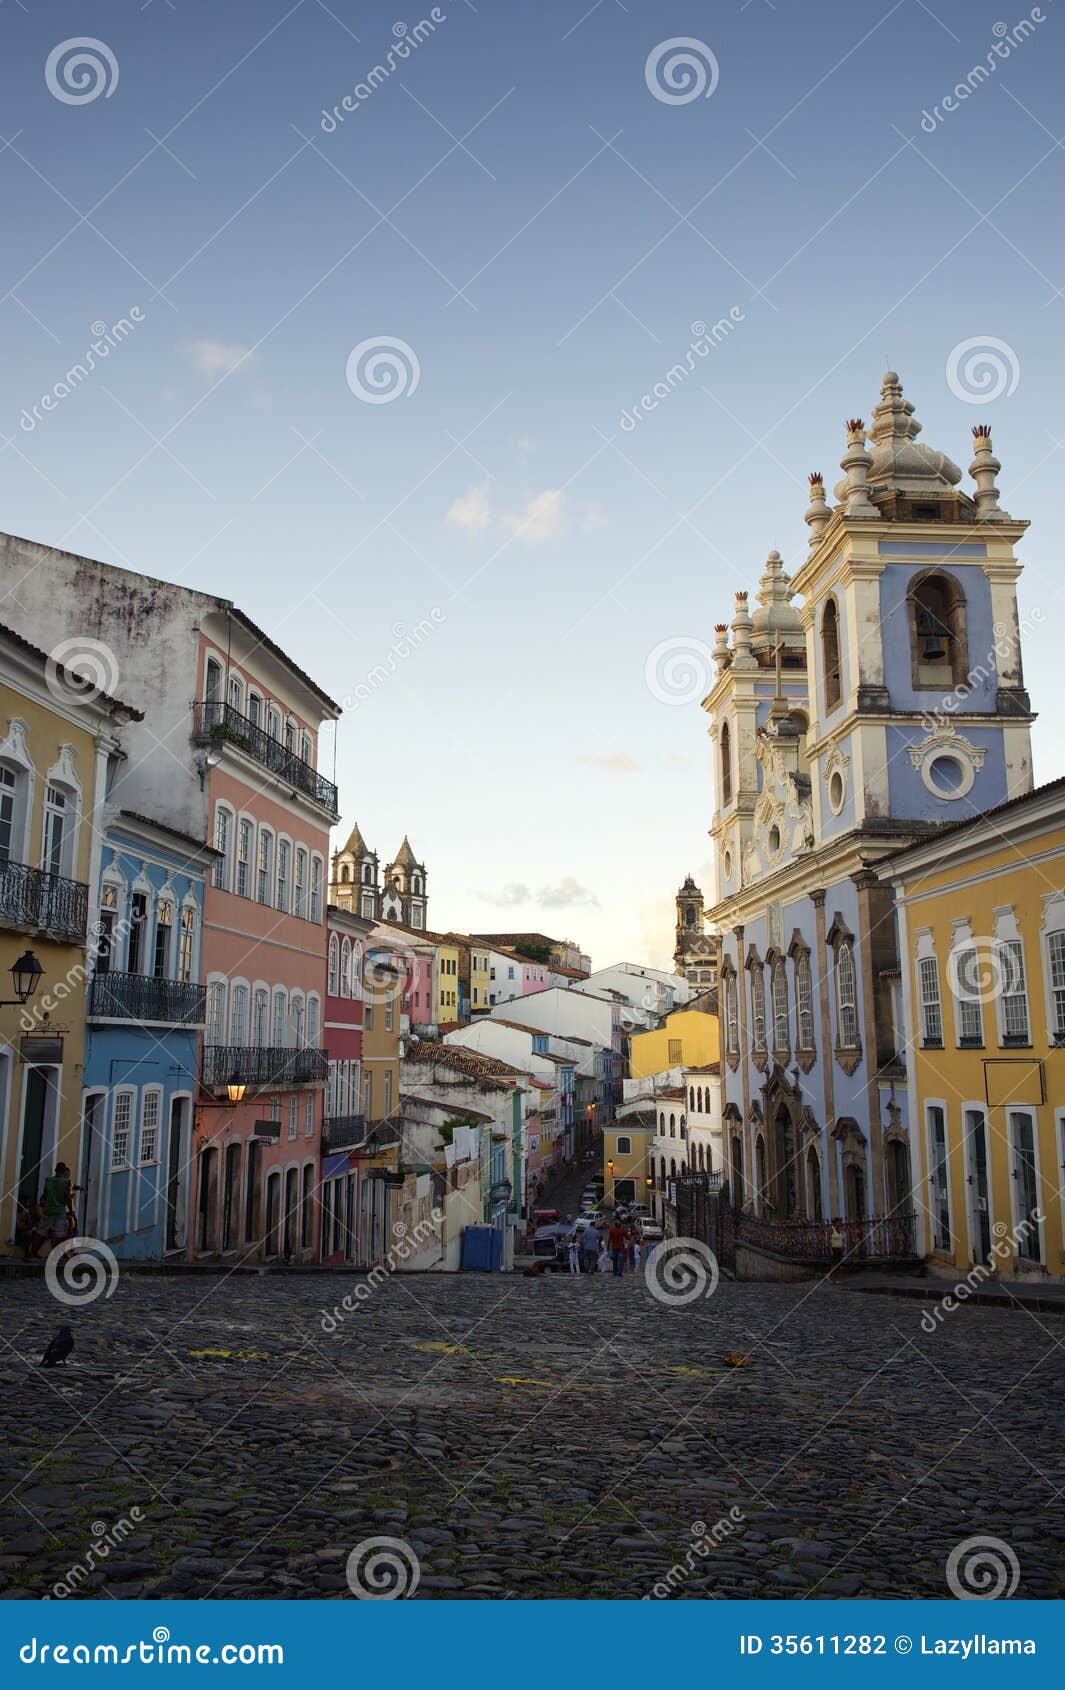 historic city center of pelourinho salvador brazil